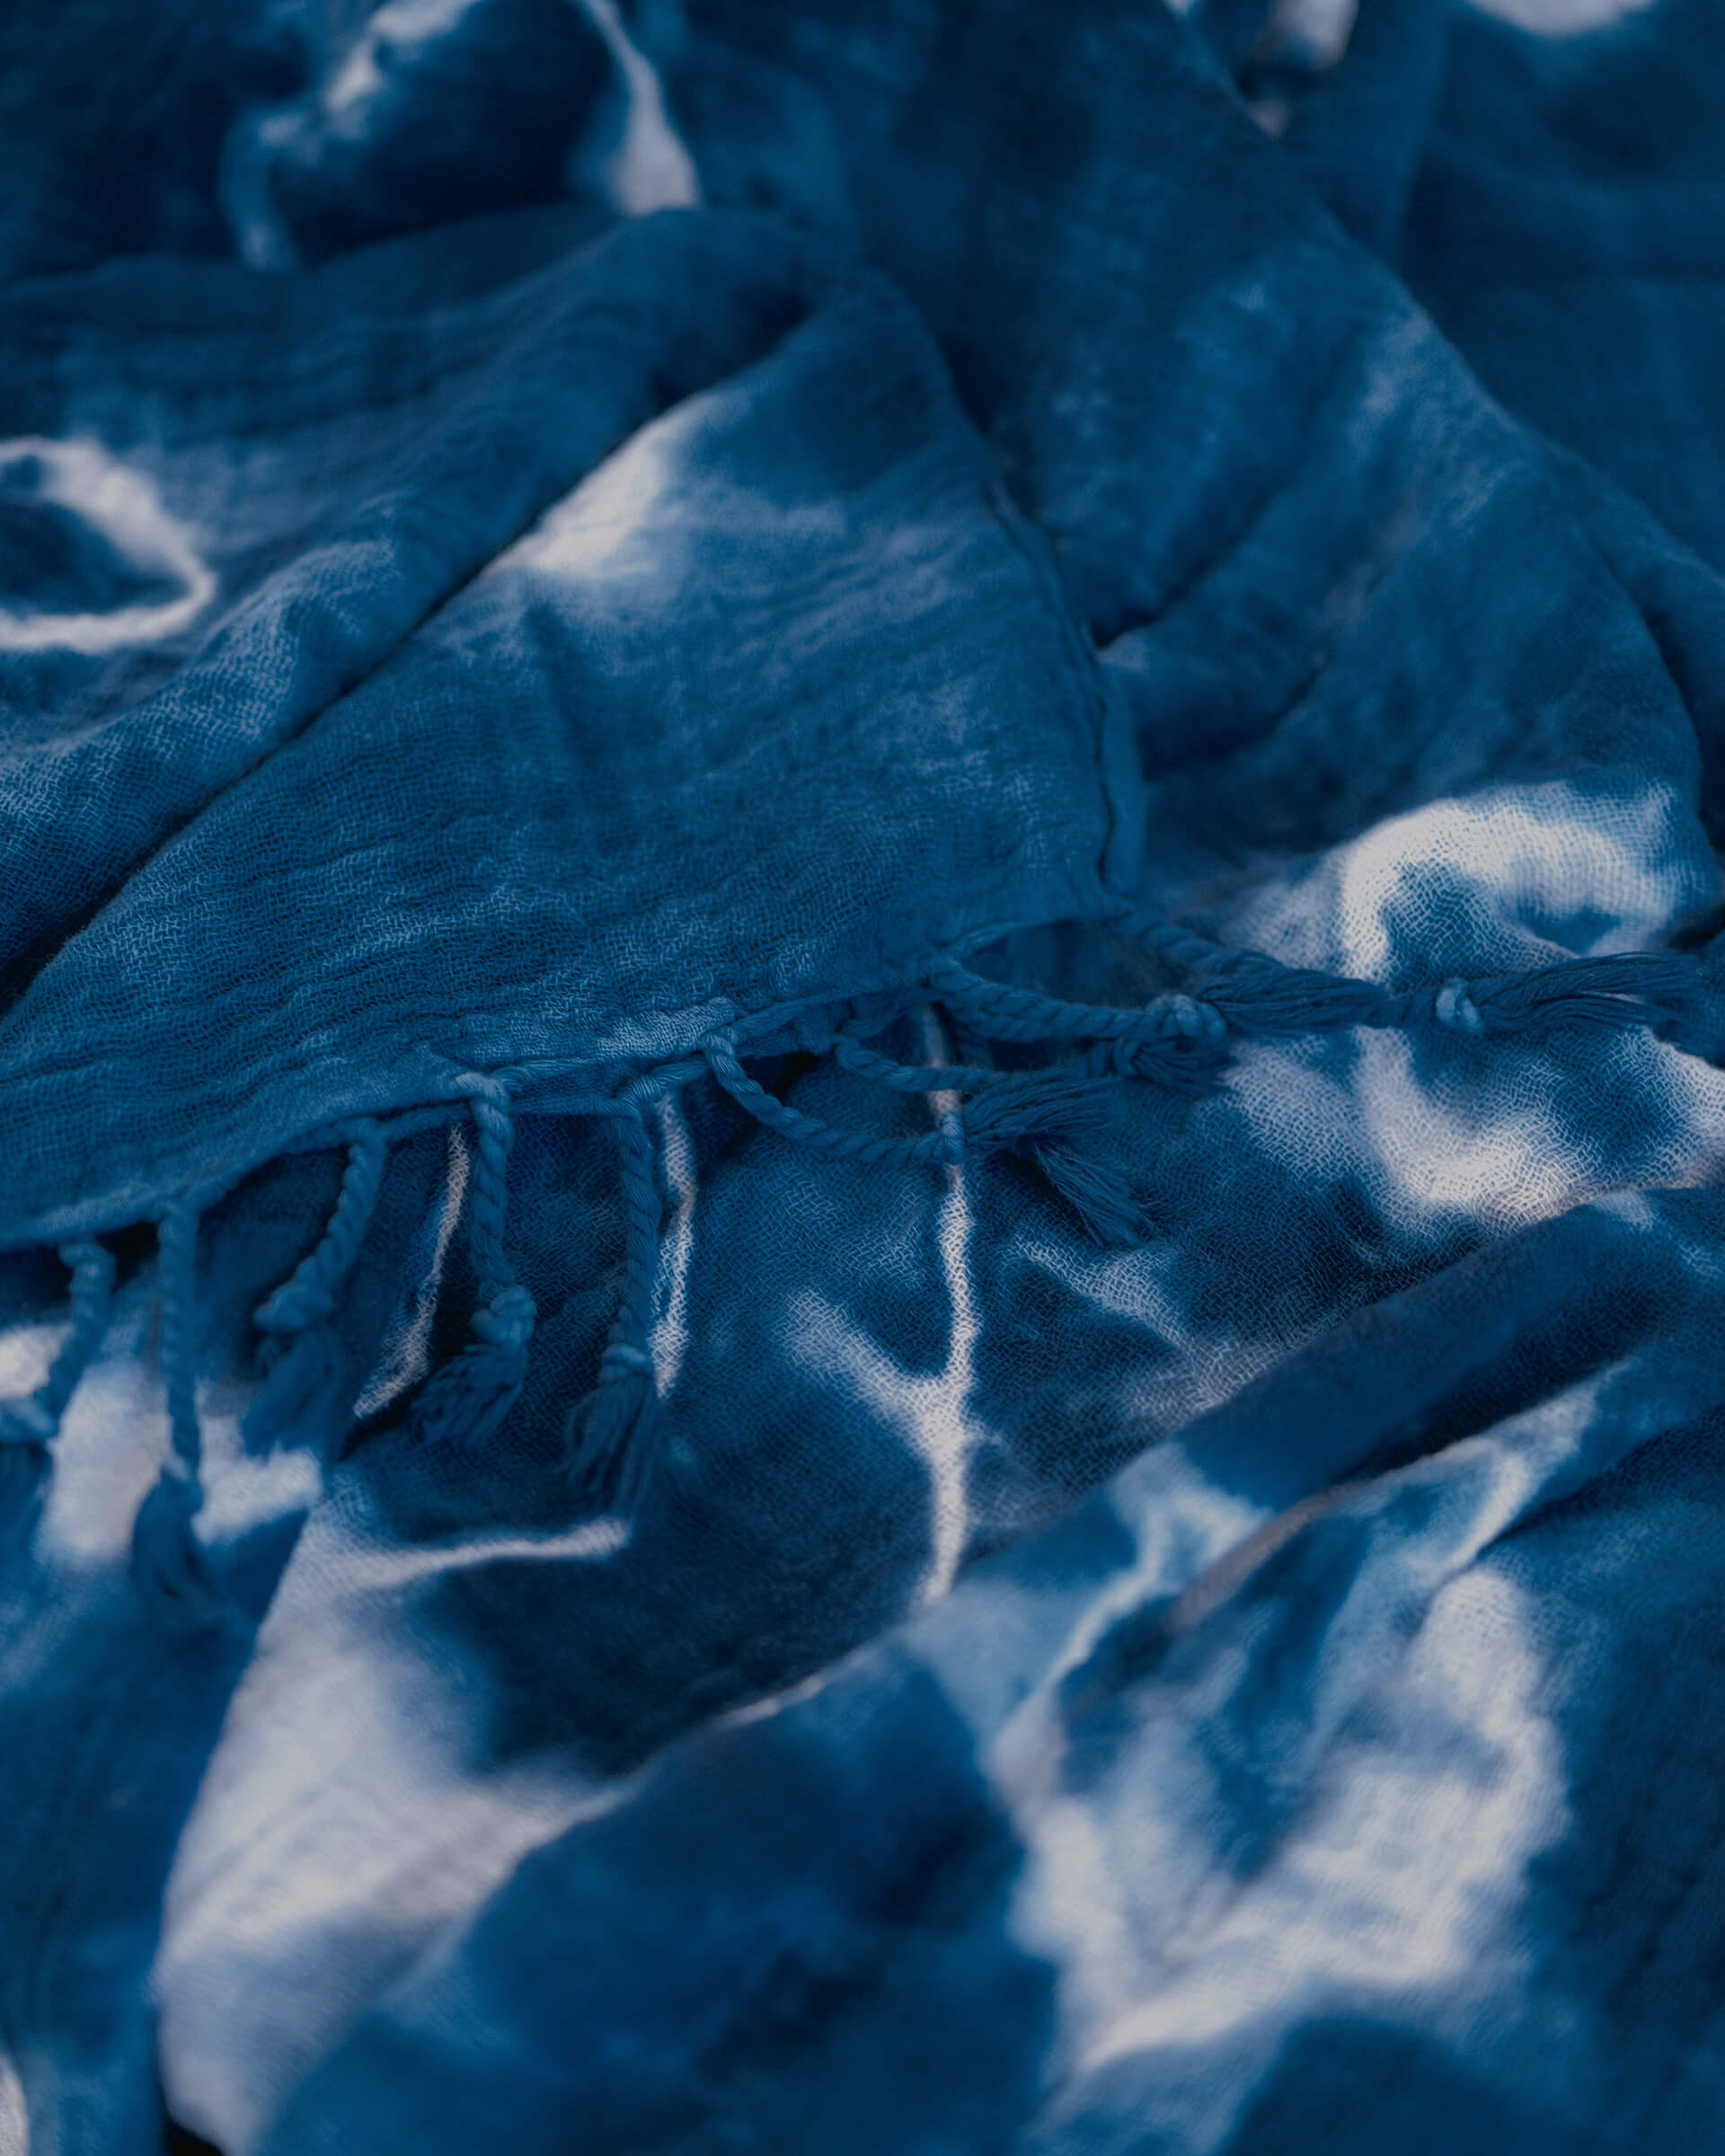 Summer House Blanket in Indigo Shiboriclose up of dark blue and white hand-dyed shibori blanket with fringe 